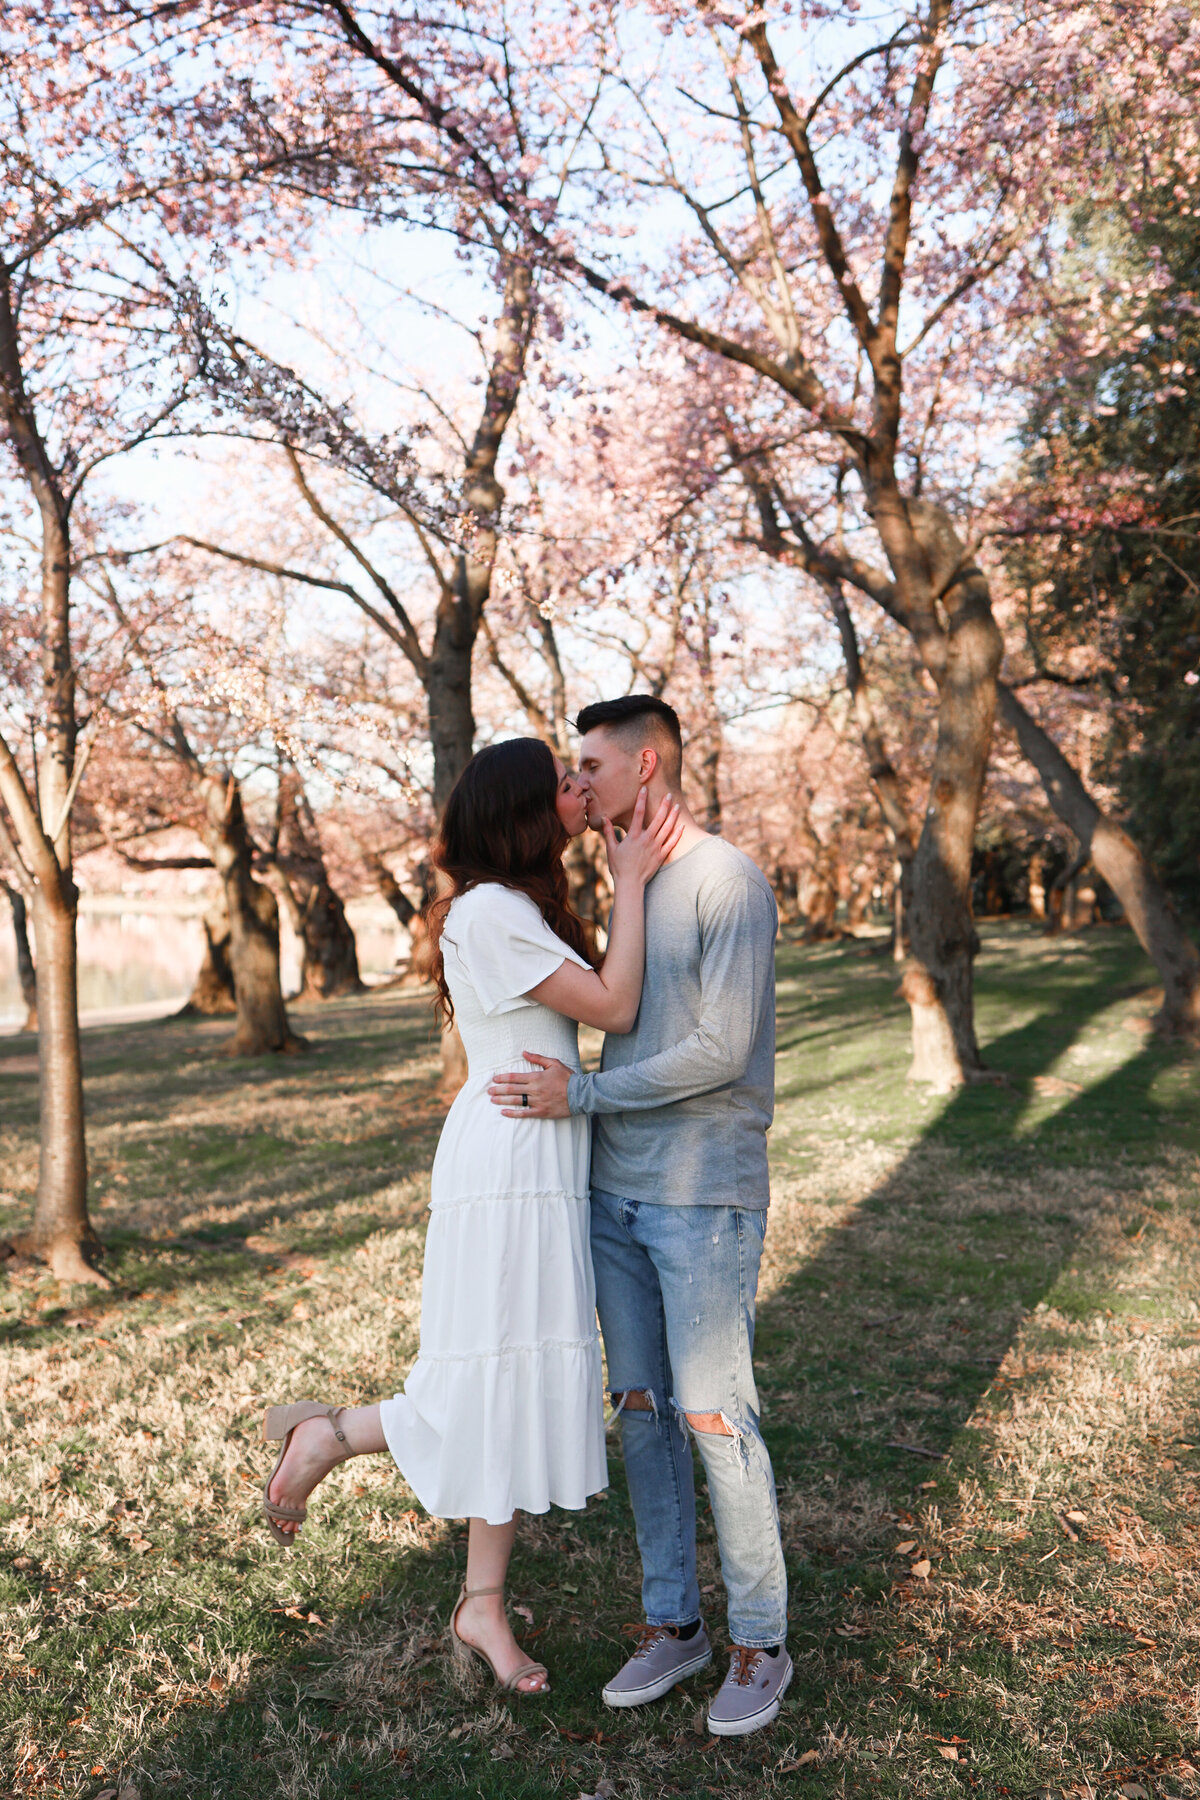 engaged couple kissing under cherry blossom trees by Washington DC wedding photographer Amanda Richardson Photography